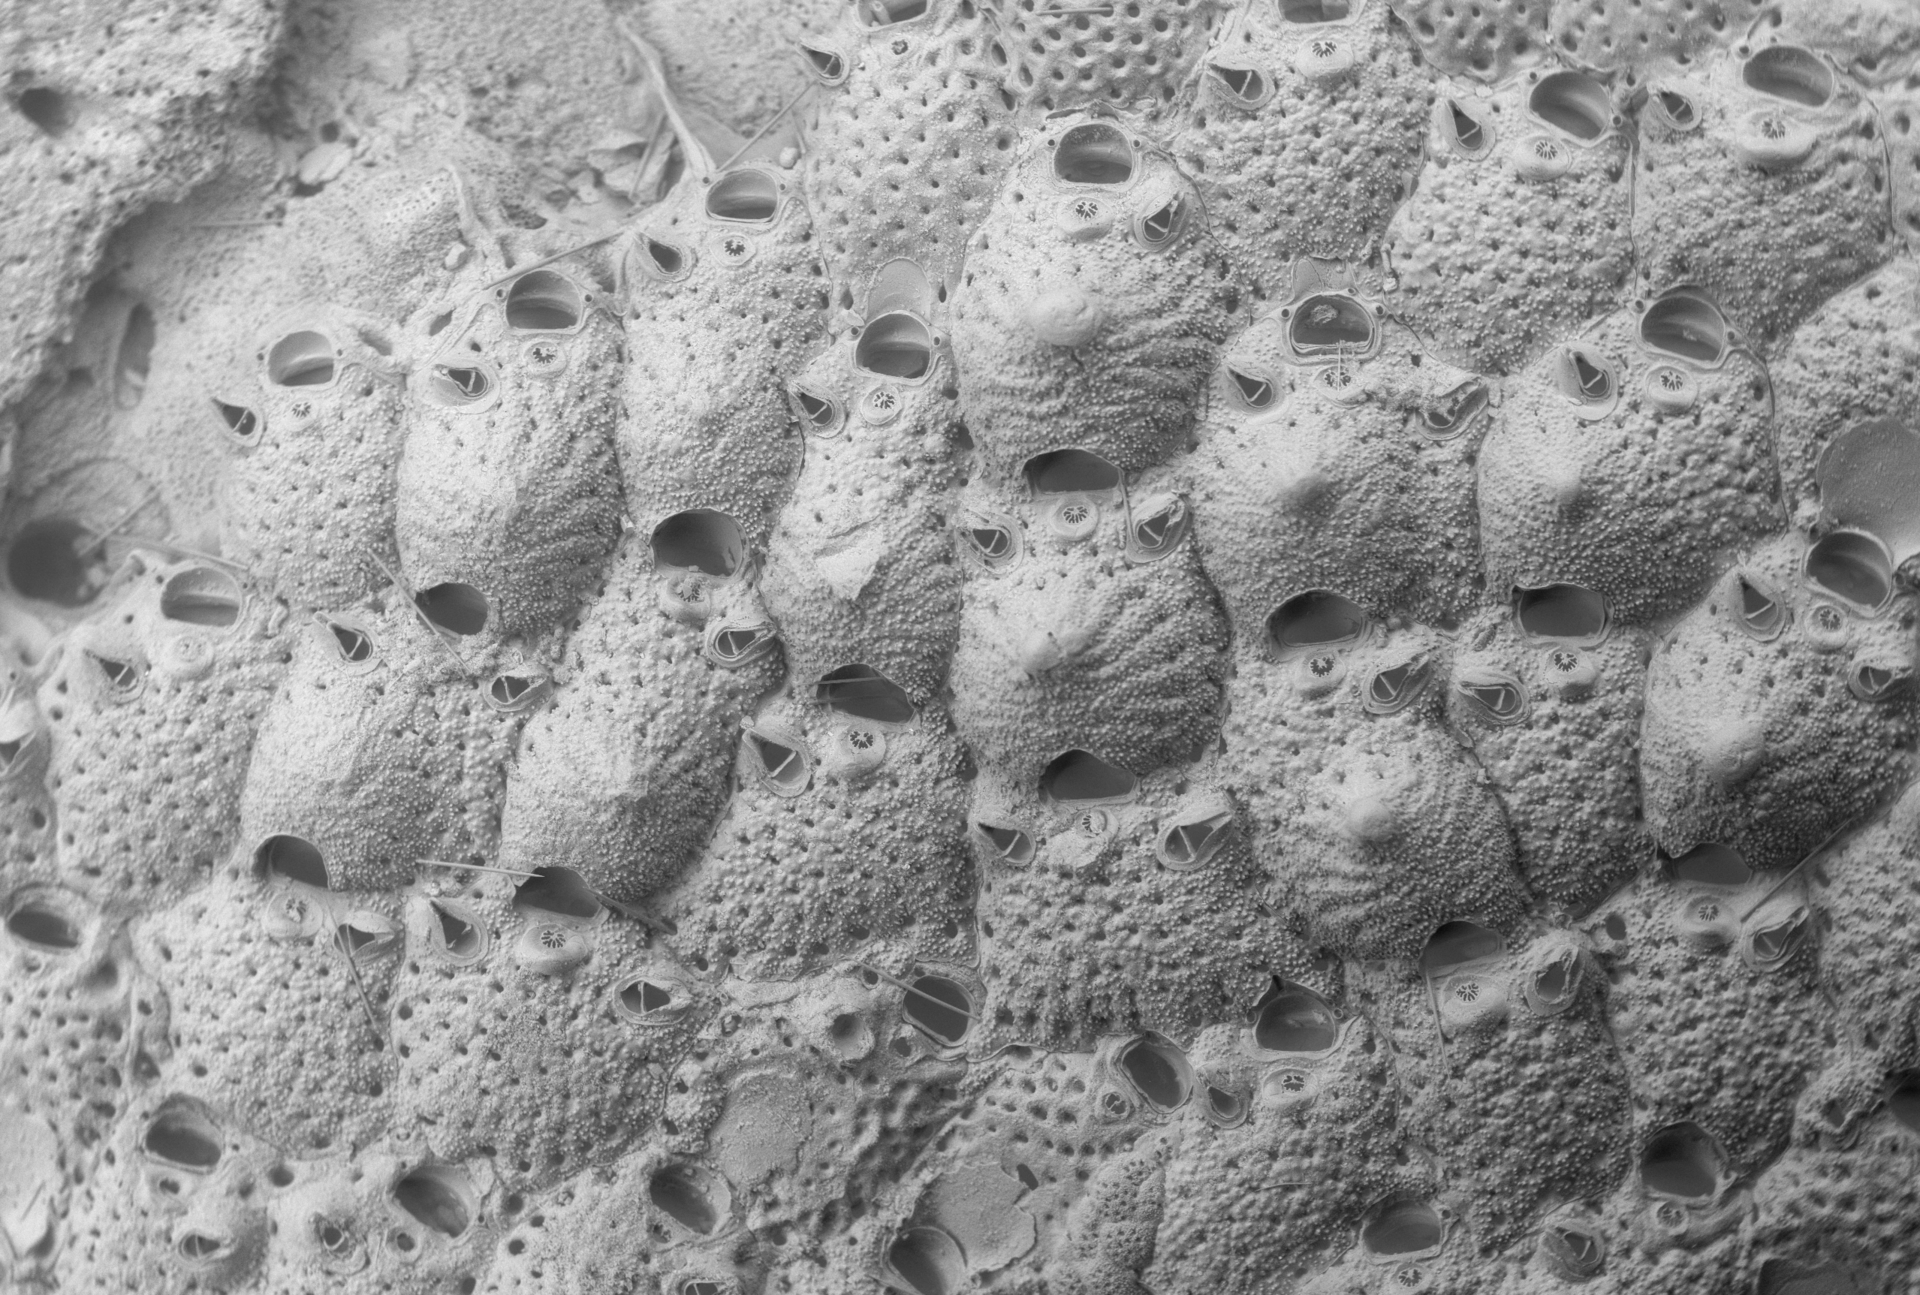 svart-hvitt bilde av mosdyret Microporella arctica